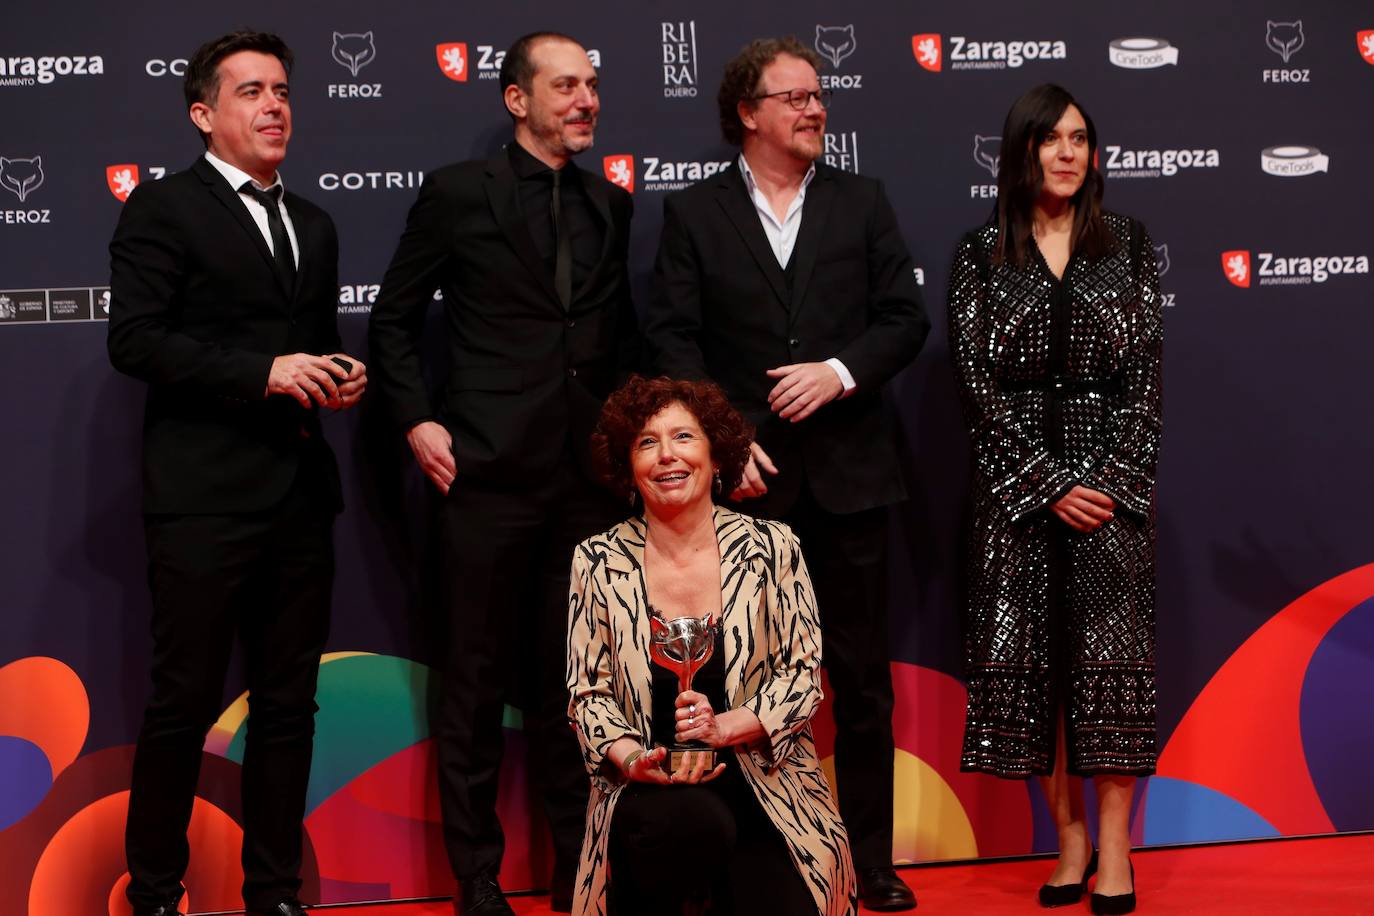 La realizador Icíar Bollaín y los productores de la película "Maixable" posan con el premio a "mejor película dramática" durante la gala de la 9ª edición de los Premios Feroz